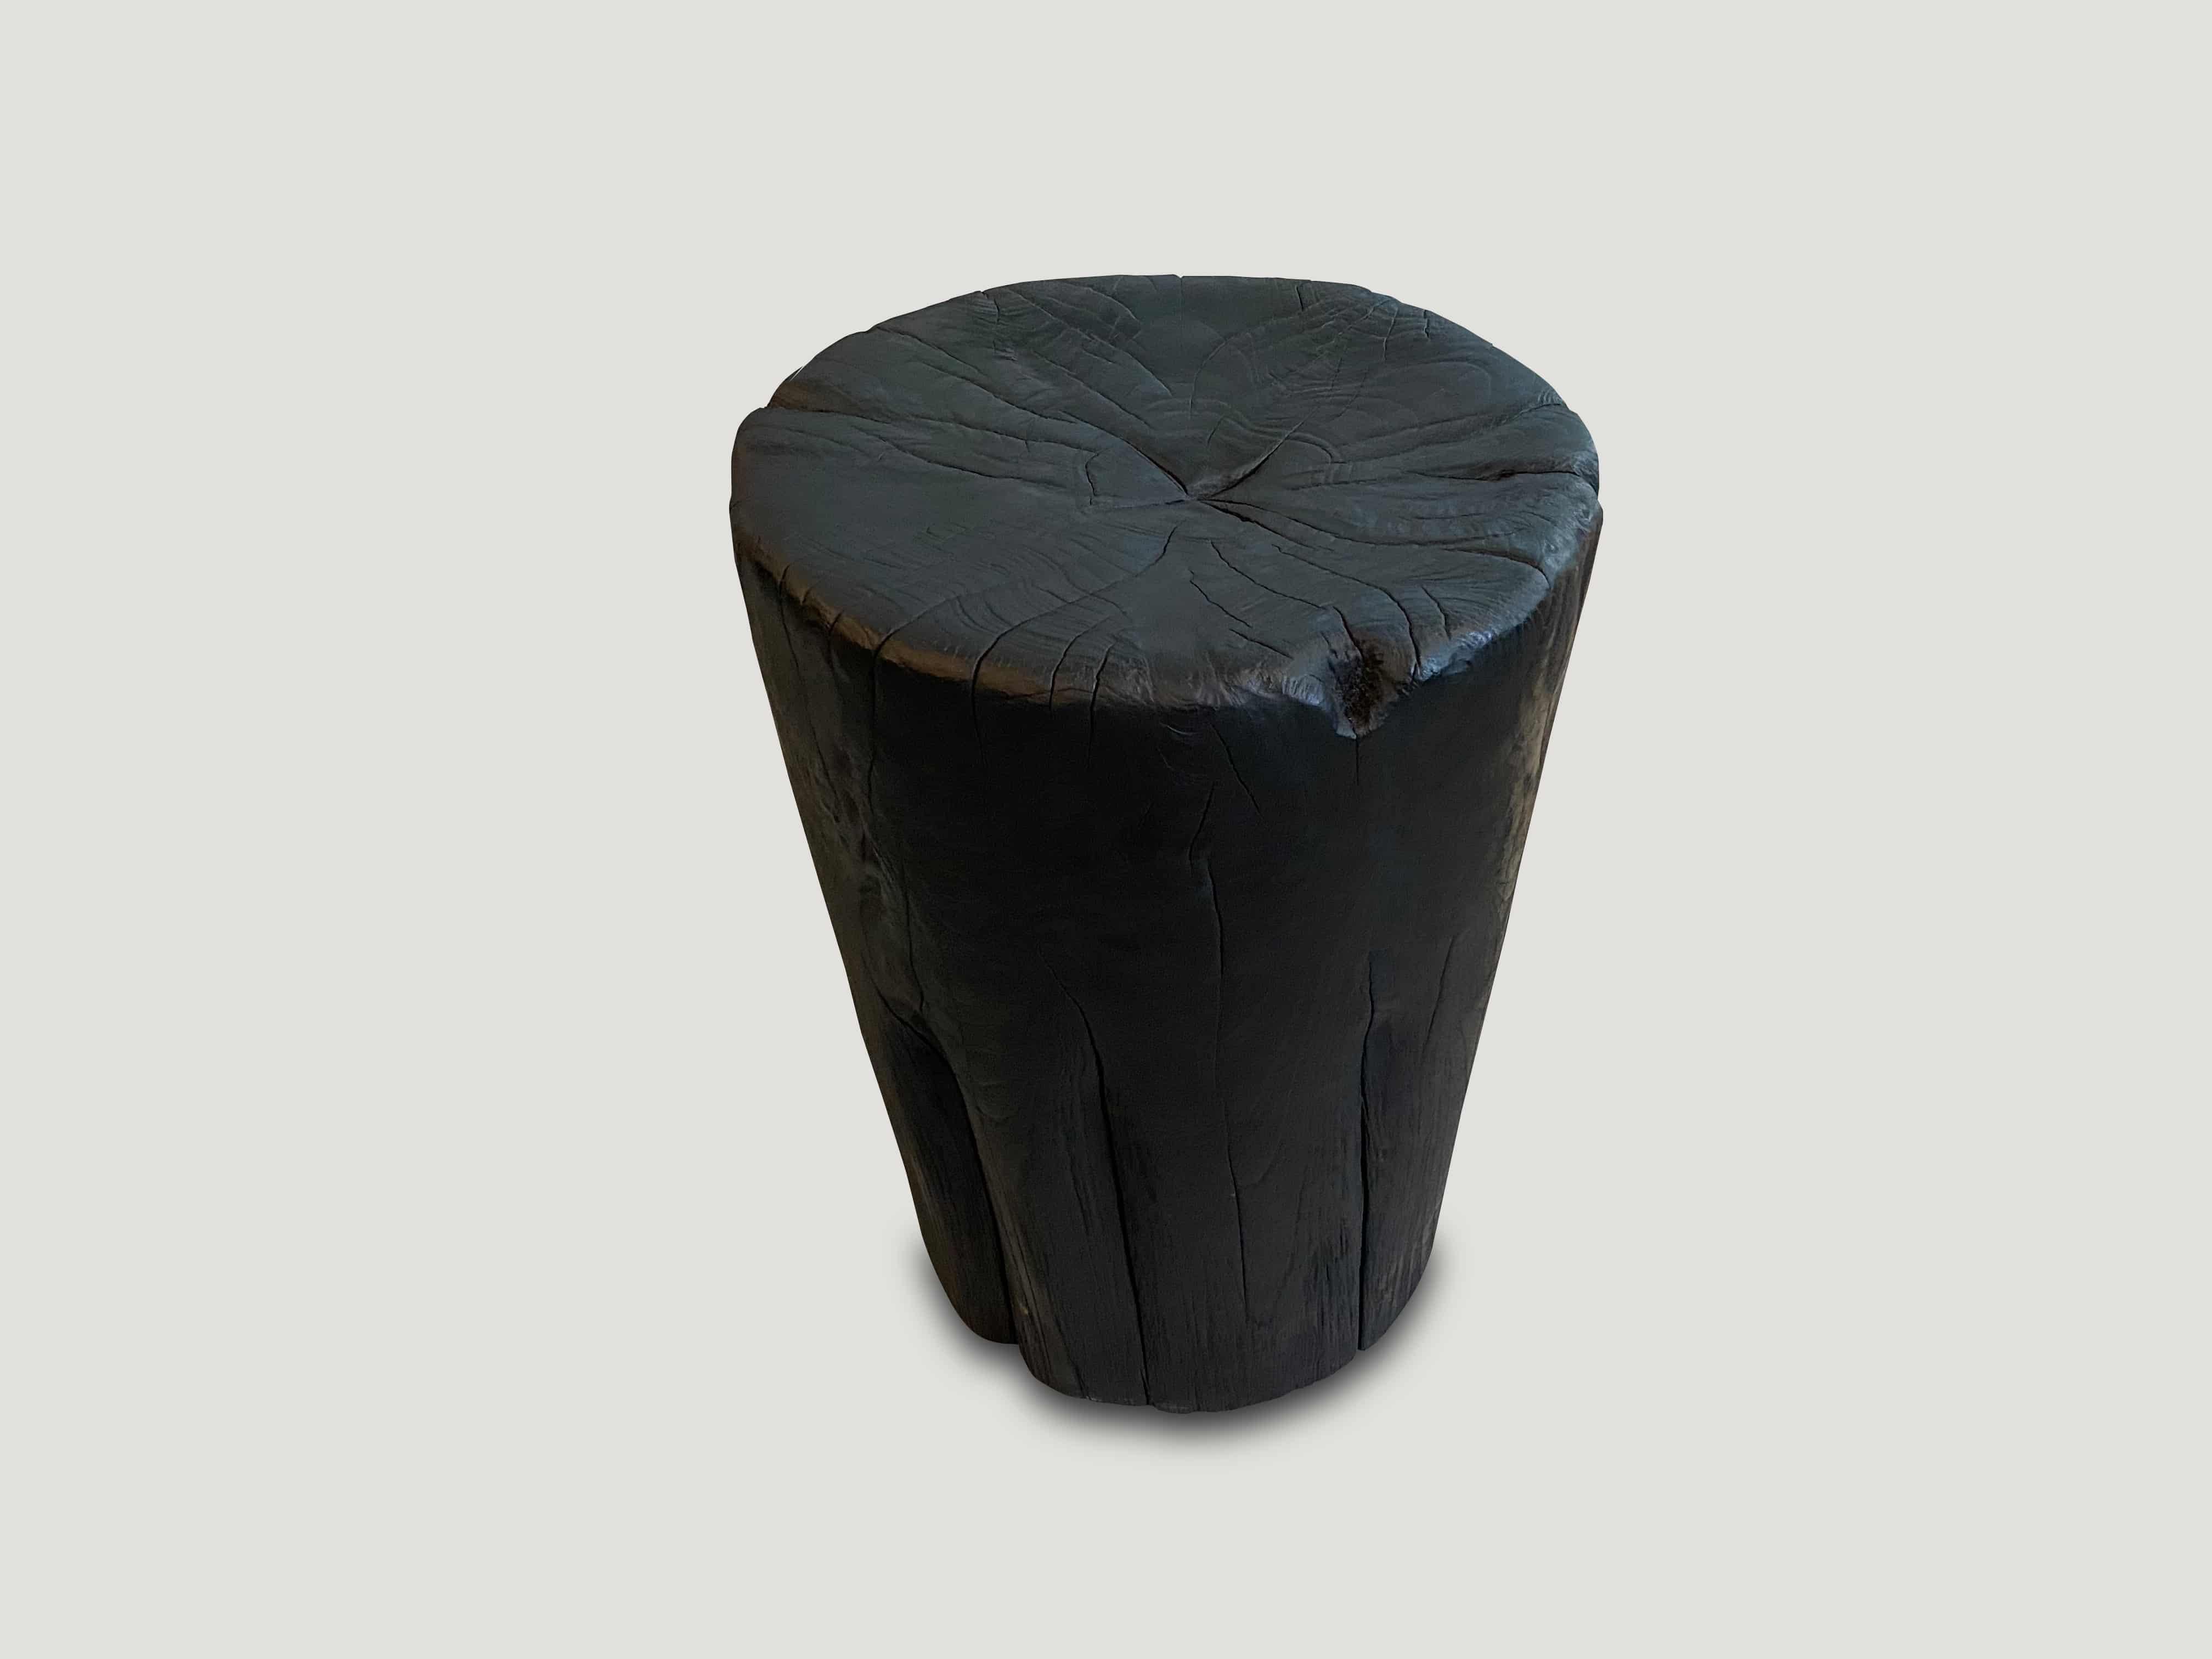 Beistelltisch oder Hocker aus altem Teakholz. Von Hand in eine Trommelform geschnitzt, wobei das natürliche, organische Holz respektiert wird. Gekohlt, geschliffen und versiegelt, wobei die schöne Holzmaserung zum Vorschein kommt. Auch gebleicht